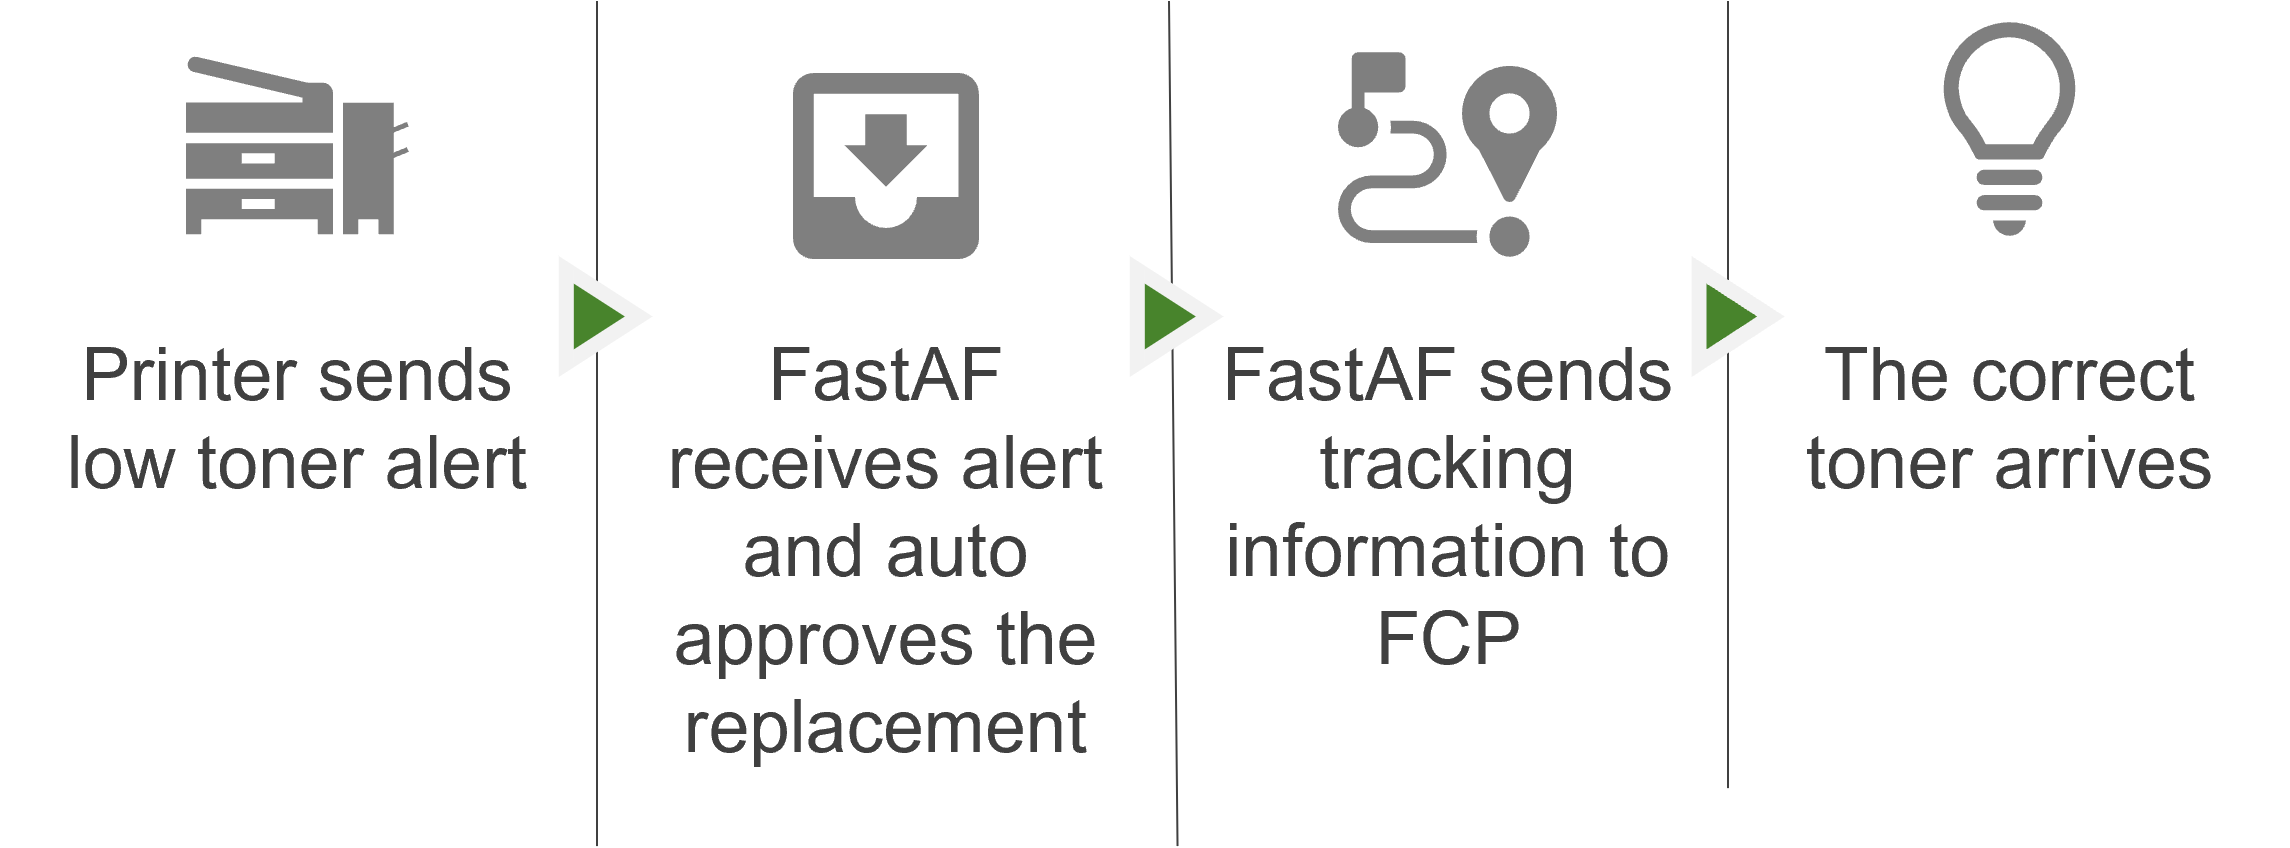 FastAF Process